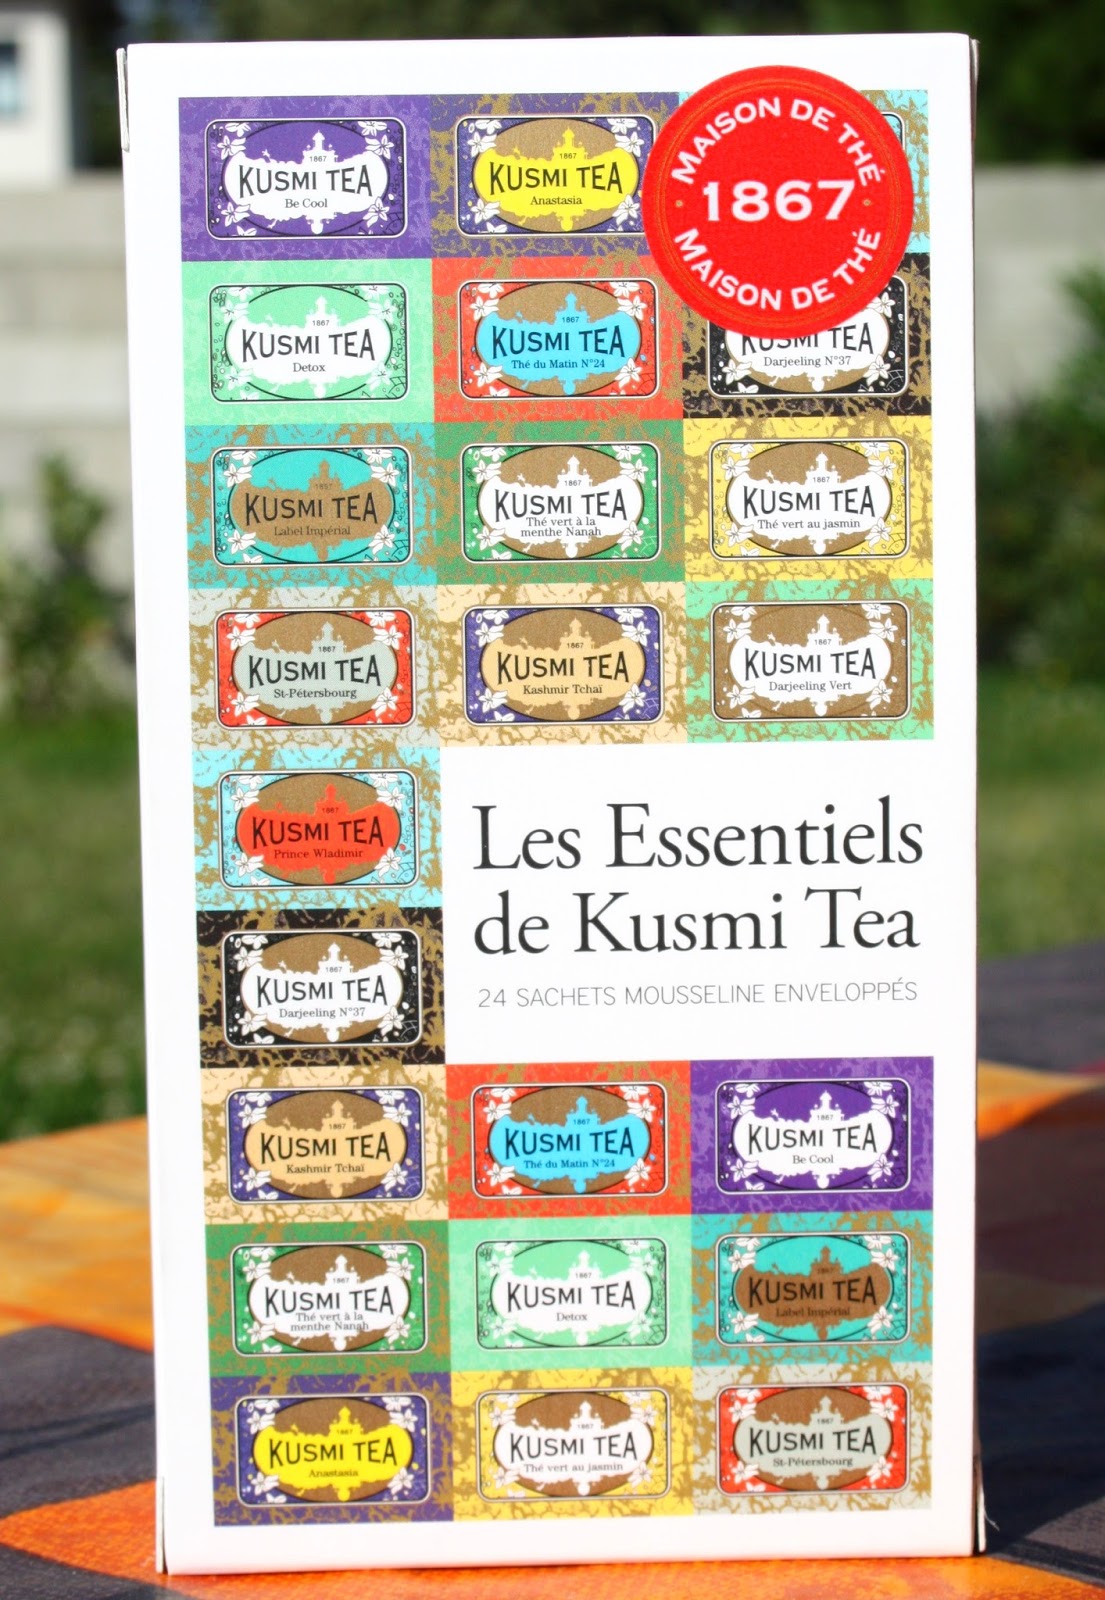 Make-up by Linoa: Les Essentiels de Kusmi Tea